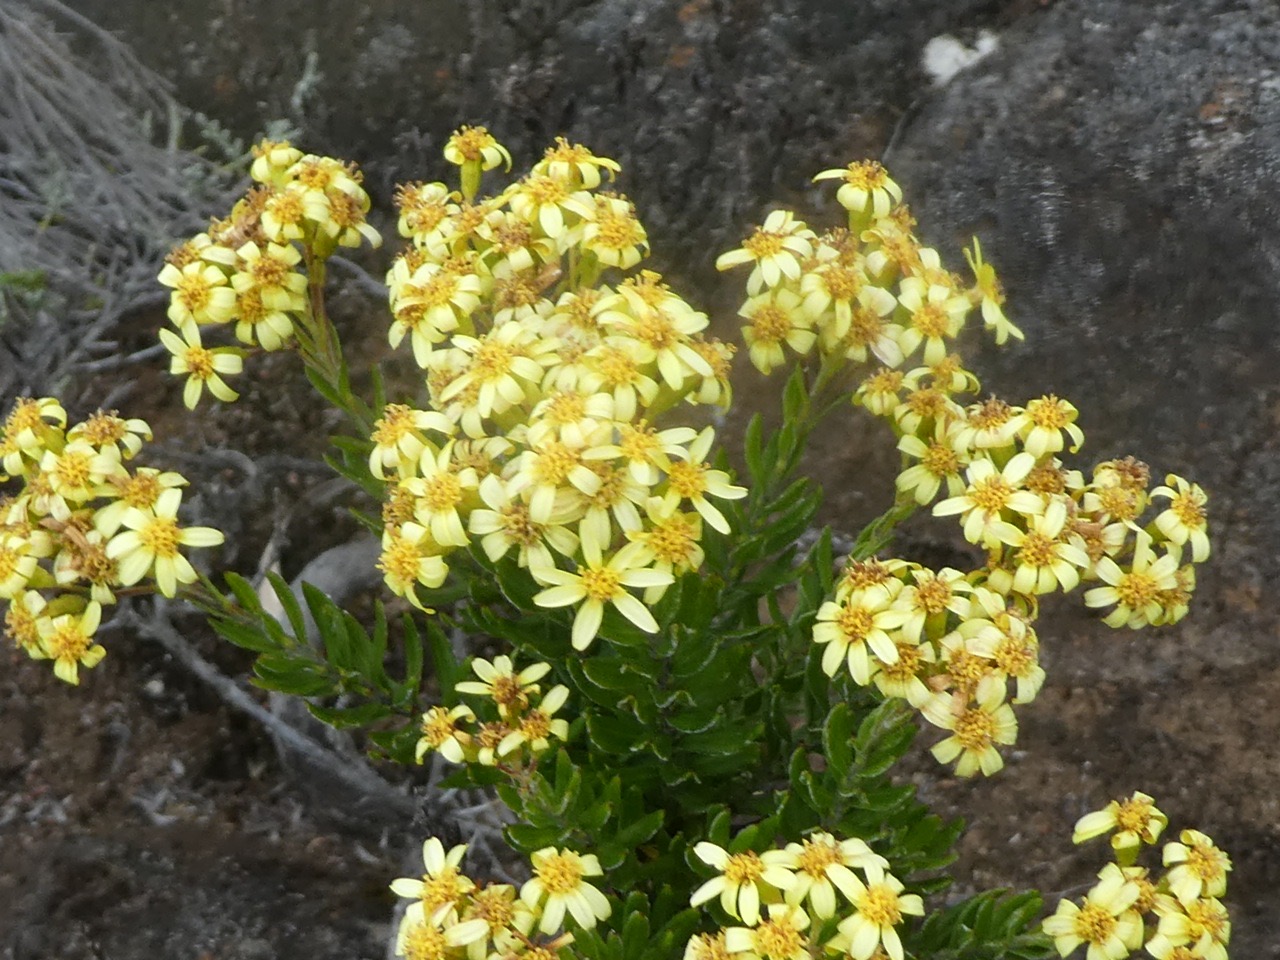 Hubertia tomentosa .ambaville blanche . asteraceae .endémique Réunion.P1700116